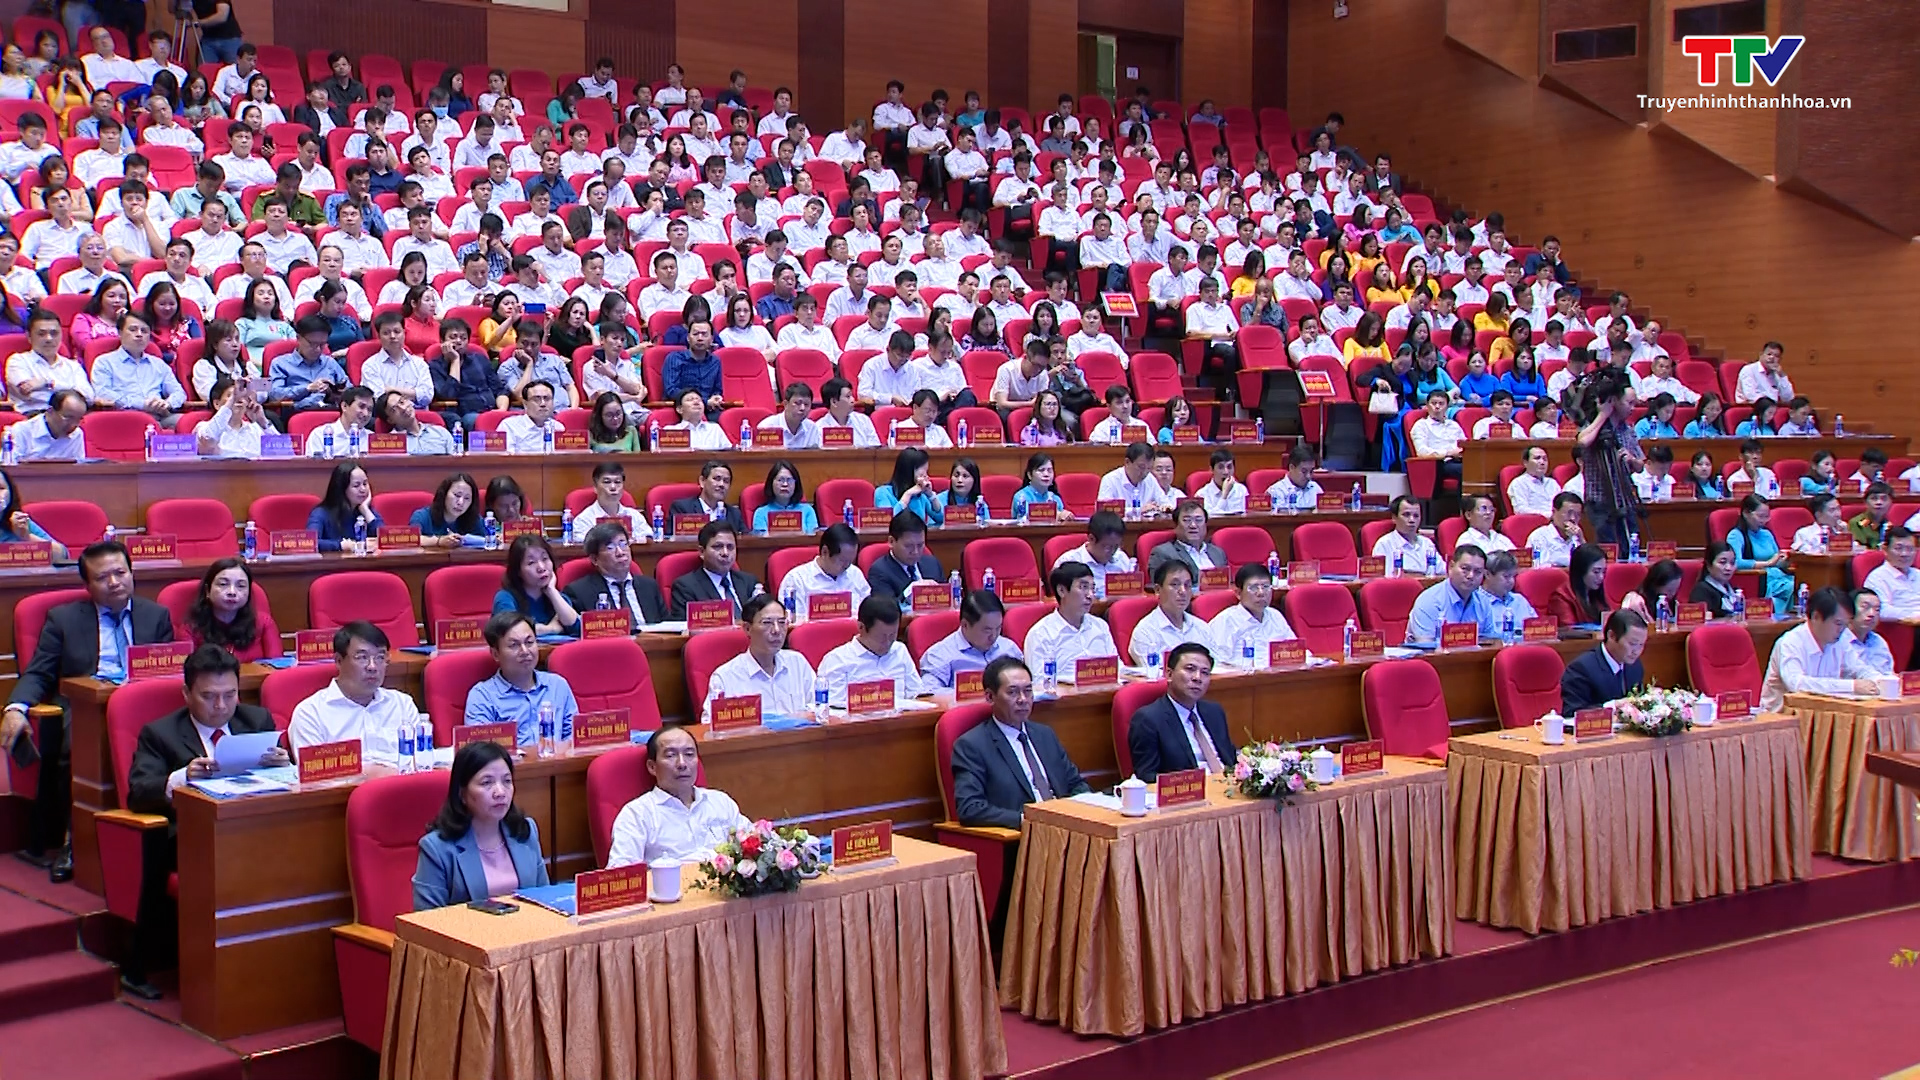 Bài phát biểu của Chủ tịch UBND tỉnh tại Hội nghị công bố quy hoạch chung đô thị Thanh Hóa, tỉnh Thanh Hóa đến năm 2040 - Ảnh 4.